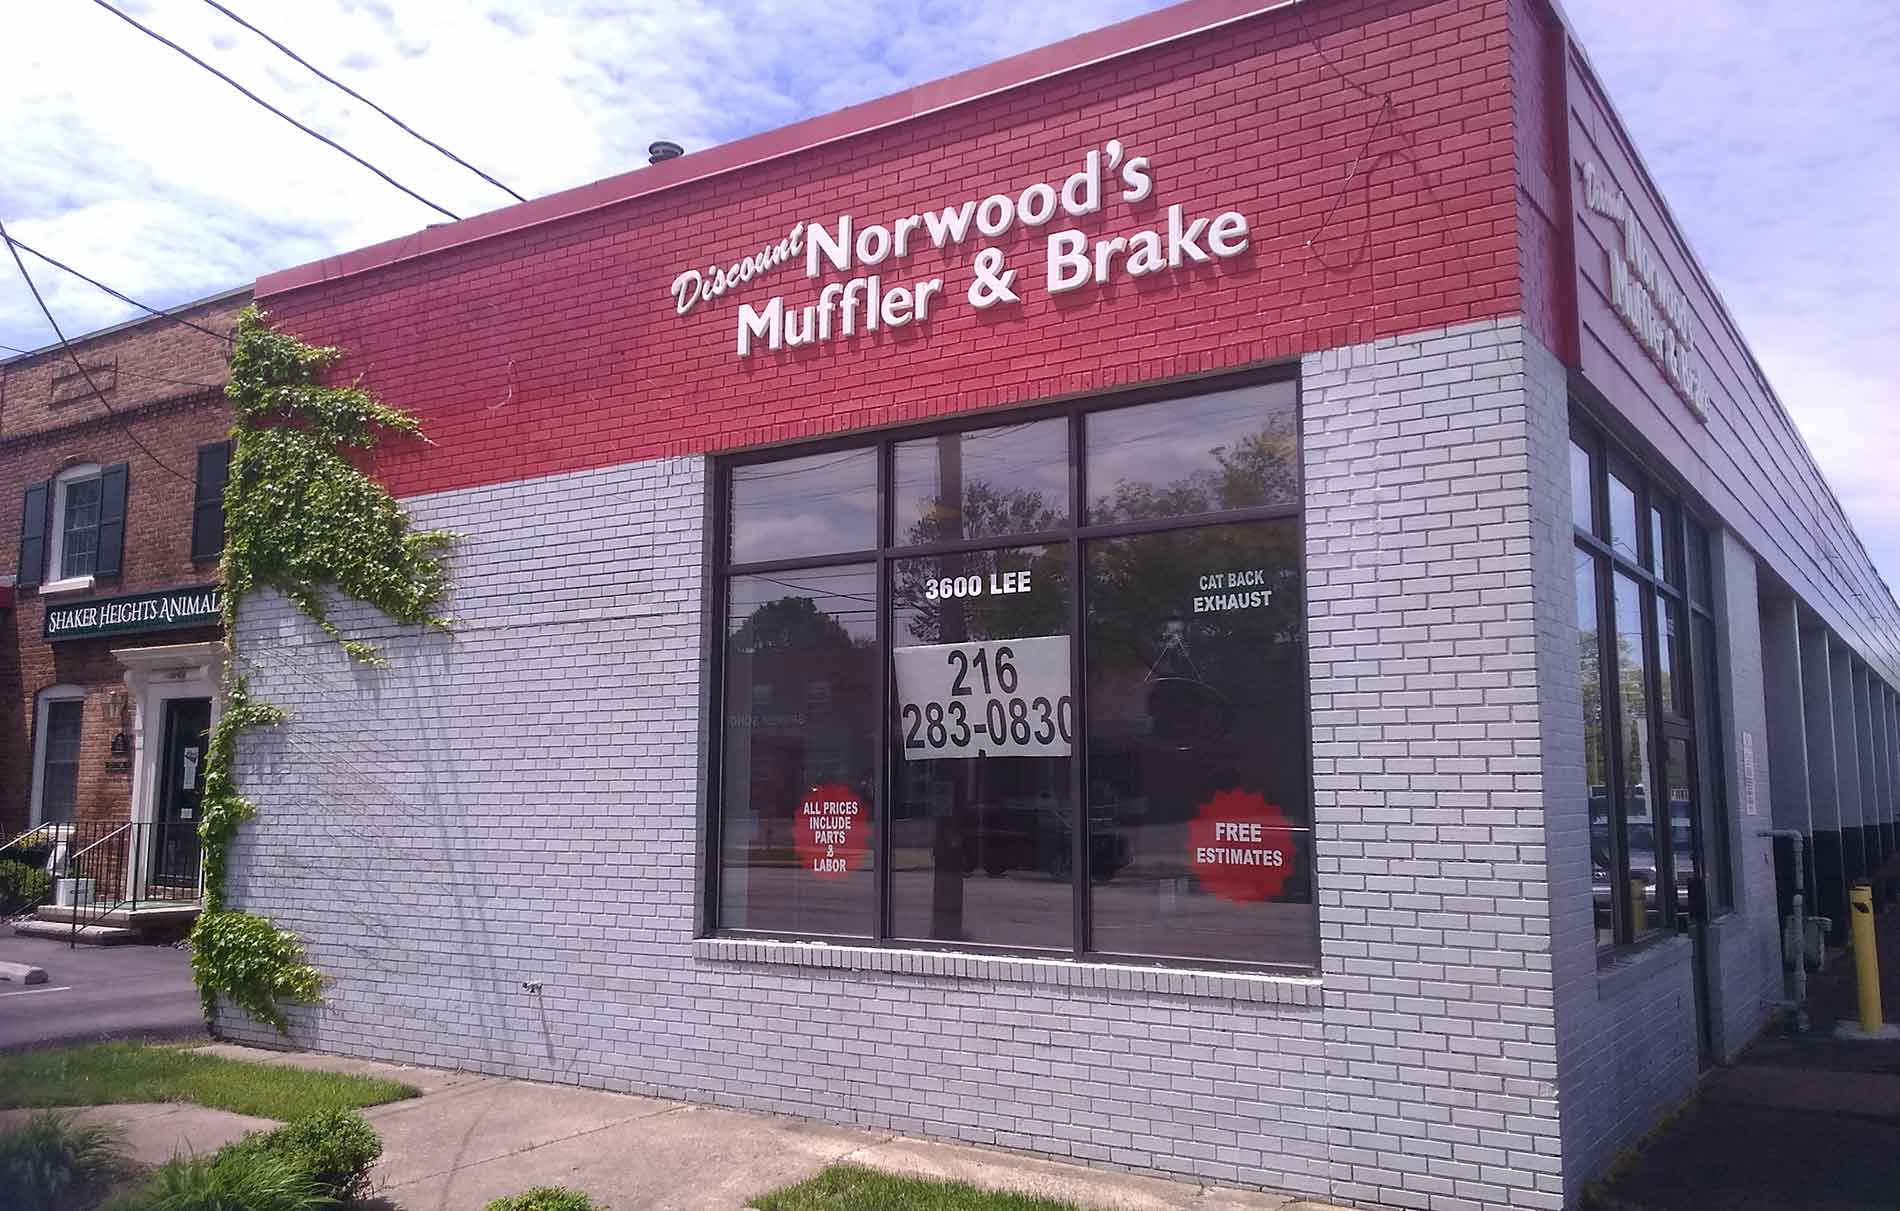 Norwood's Discount Muffler & Brake Photo